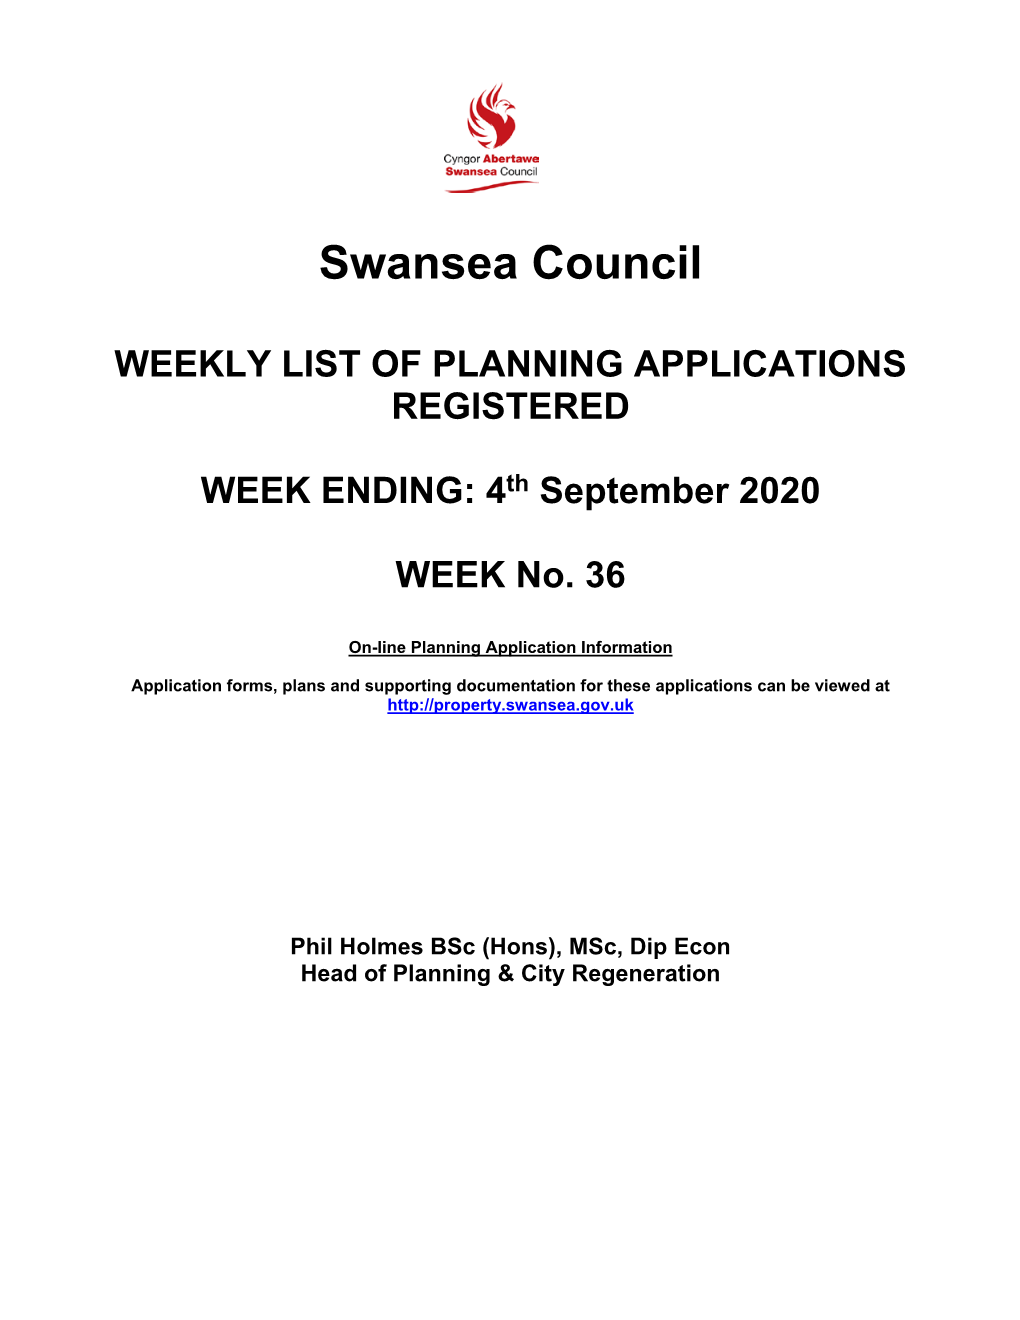 Applications for Week Ending 4 September 2020